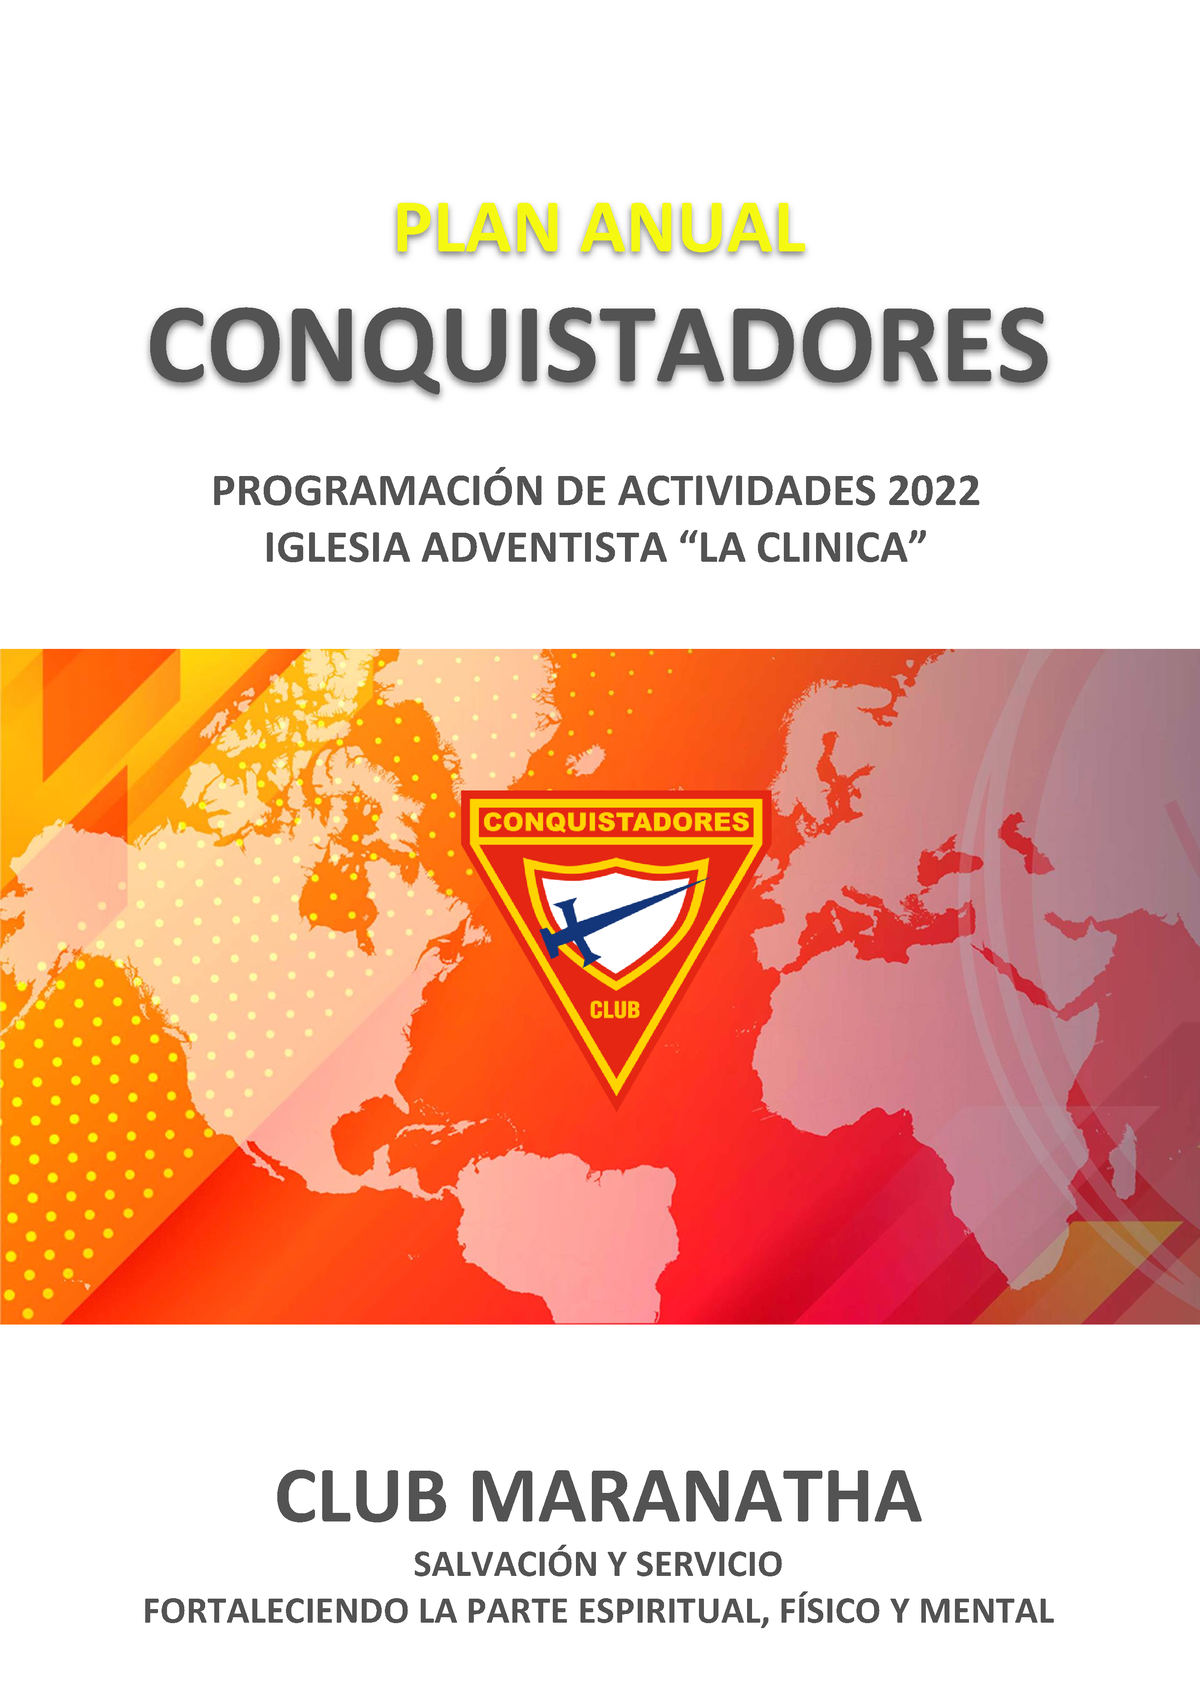 PLAN DE Trabajo Anual maranatha 2022 - PLAN ANUAL CONQUISTADORES  PROGRAMACIÓN DE ACTIVIDADES 2022 - Studocu